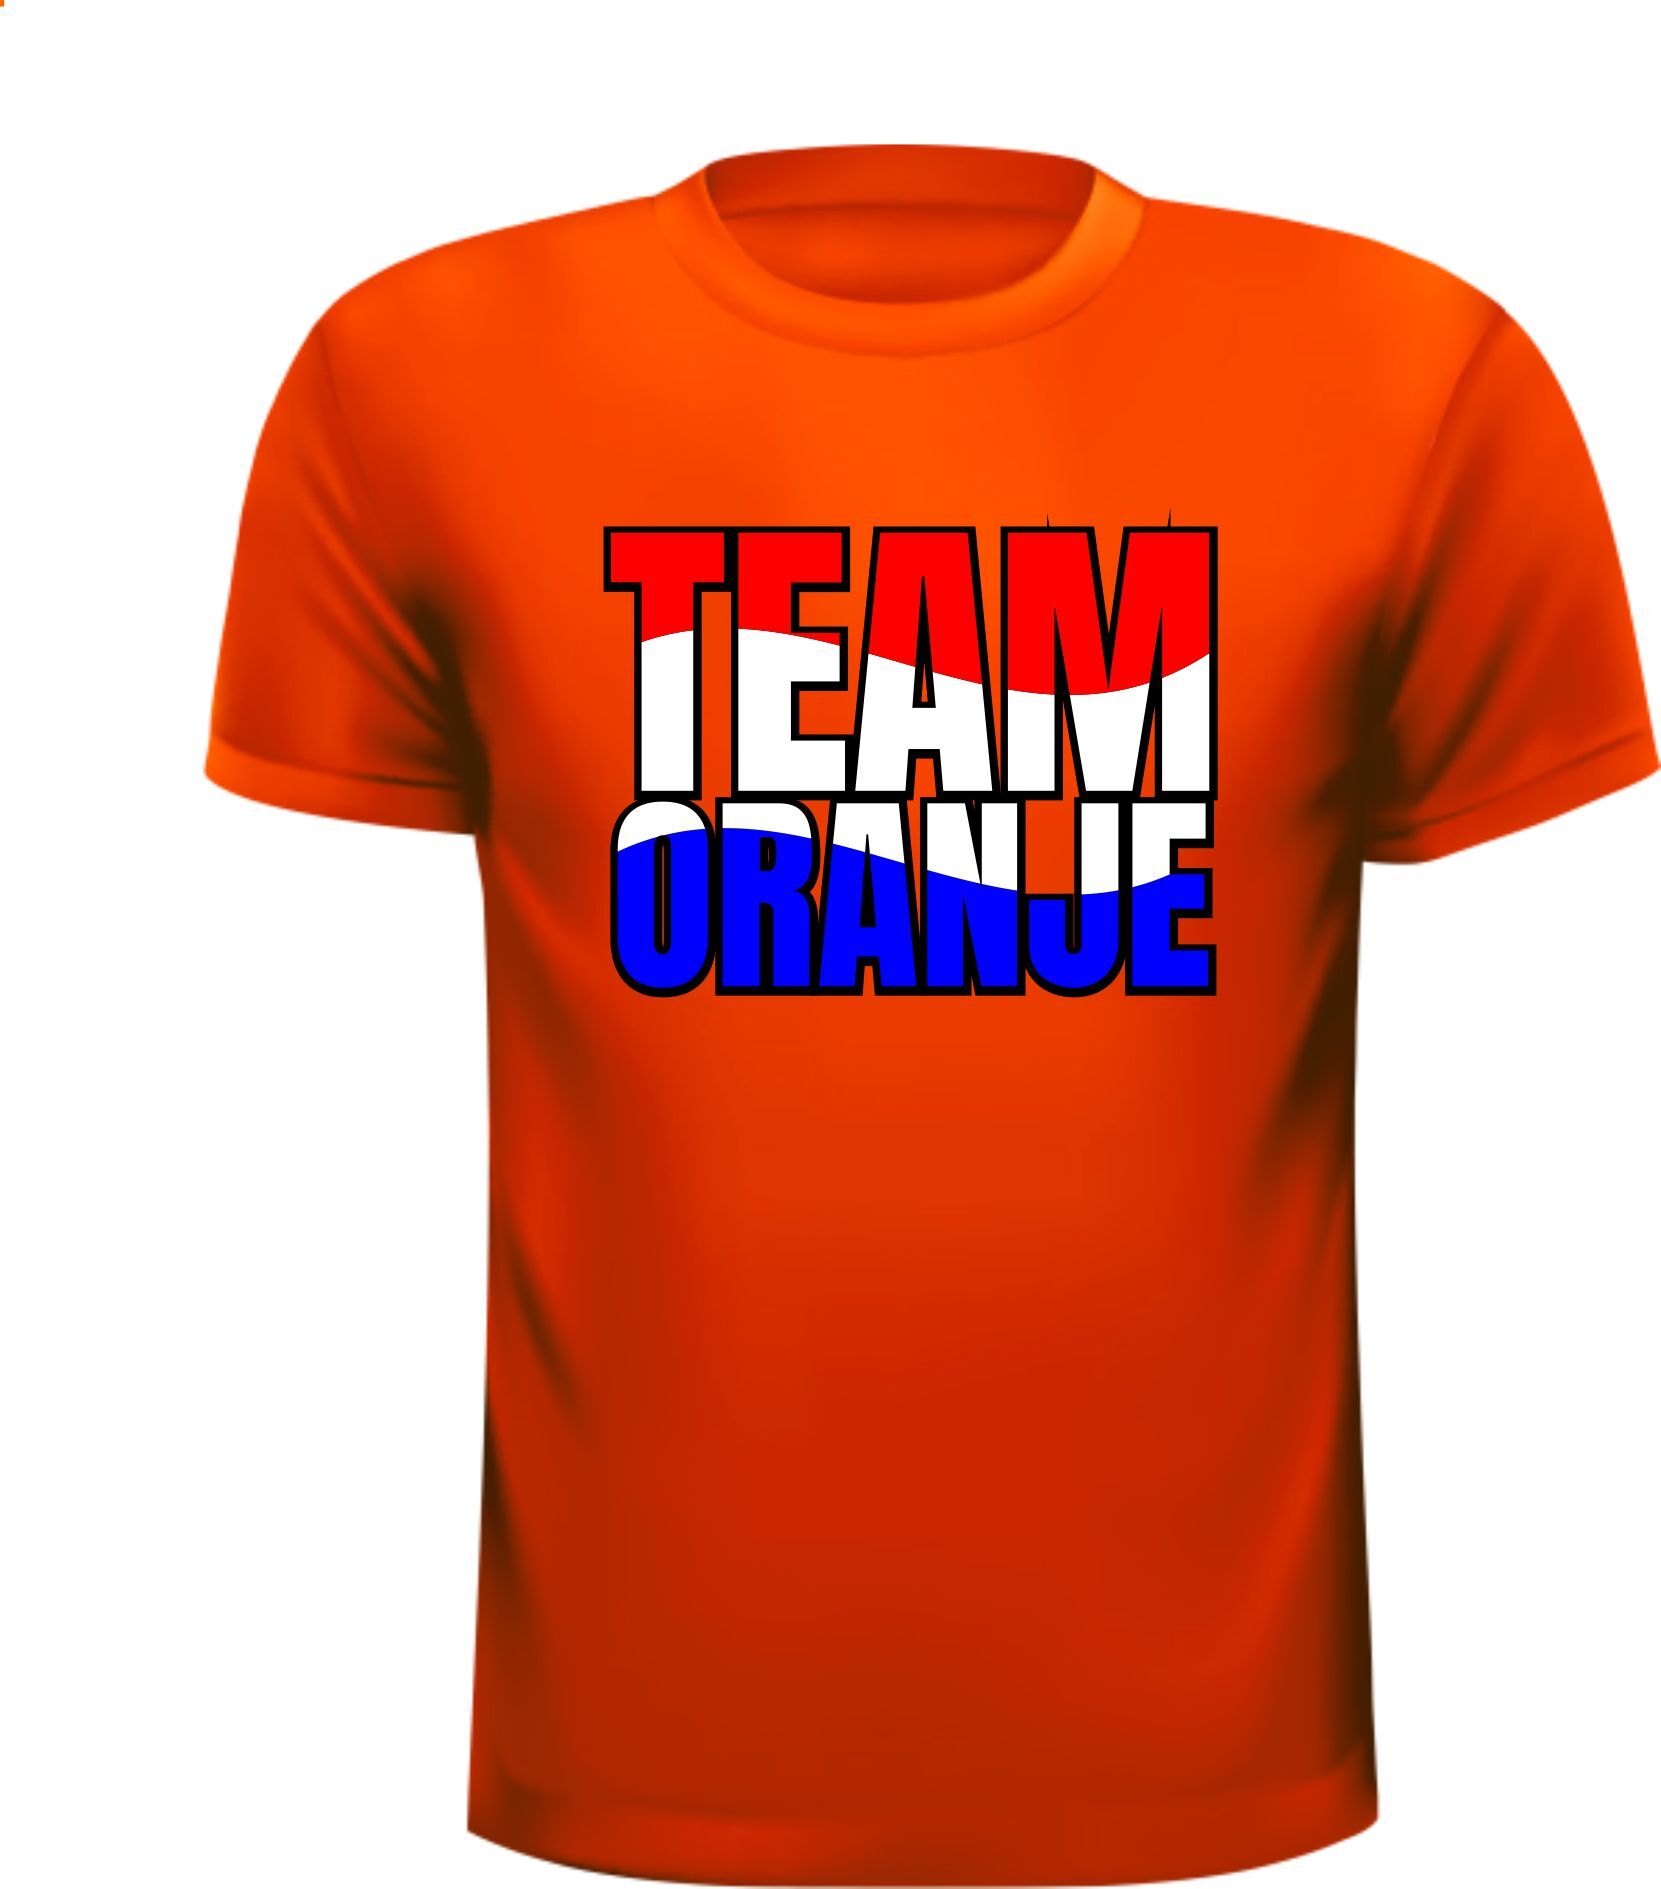 Oranje shirtje voor Team oranje